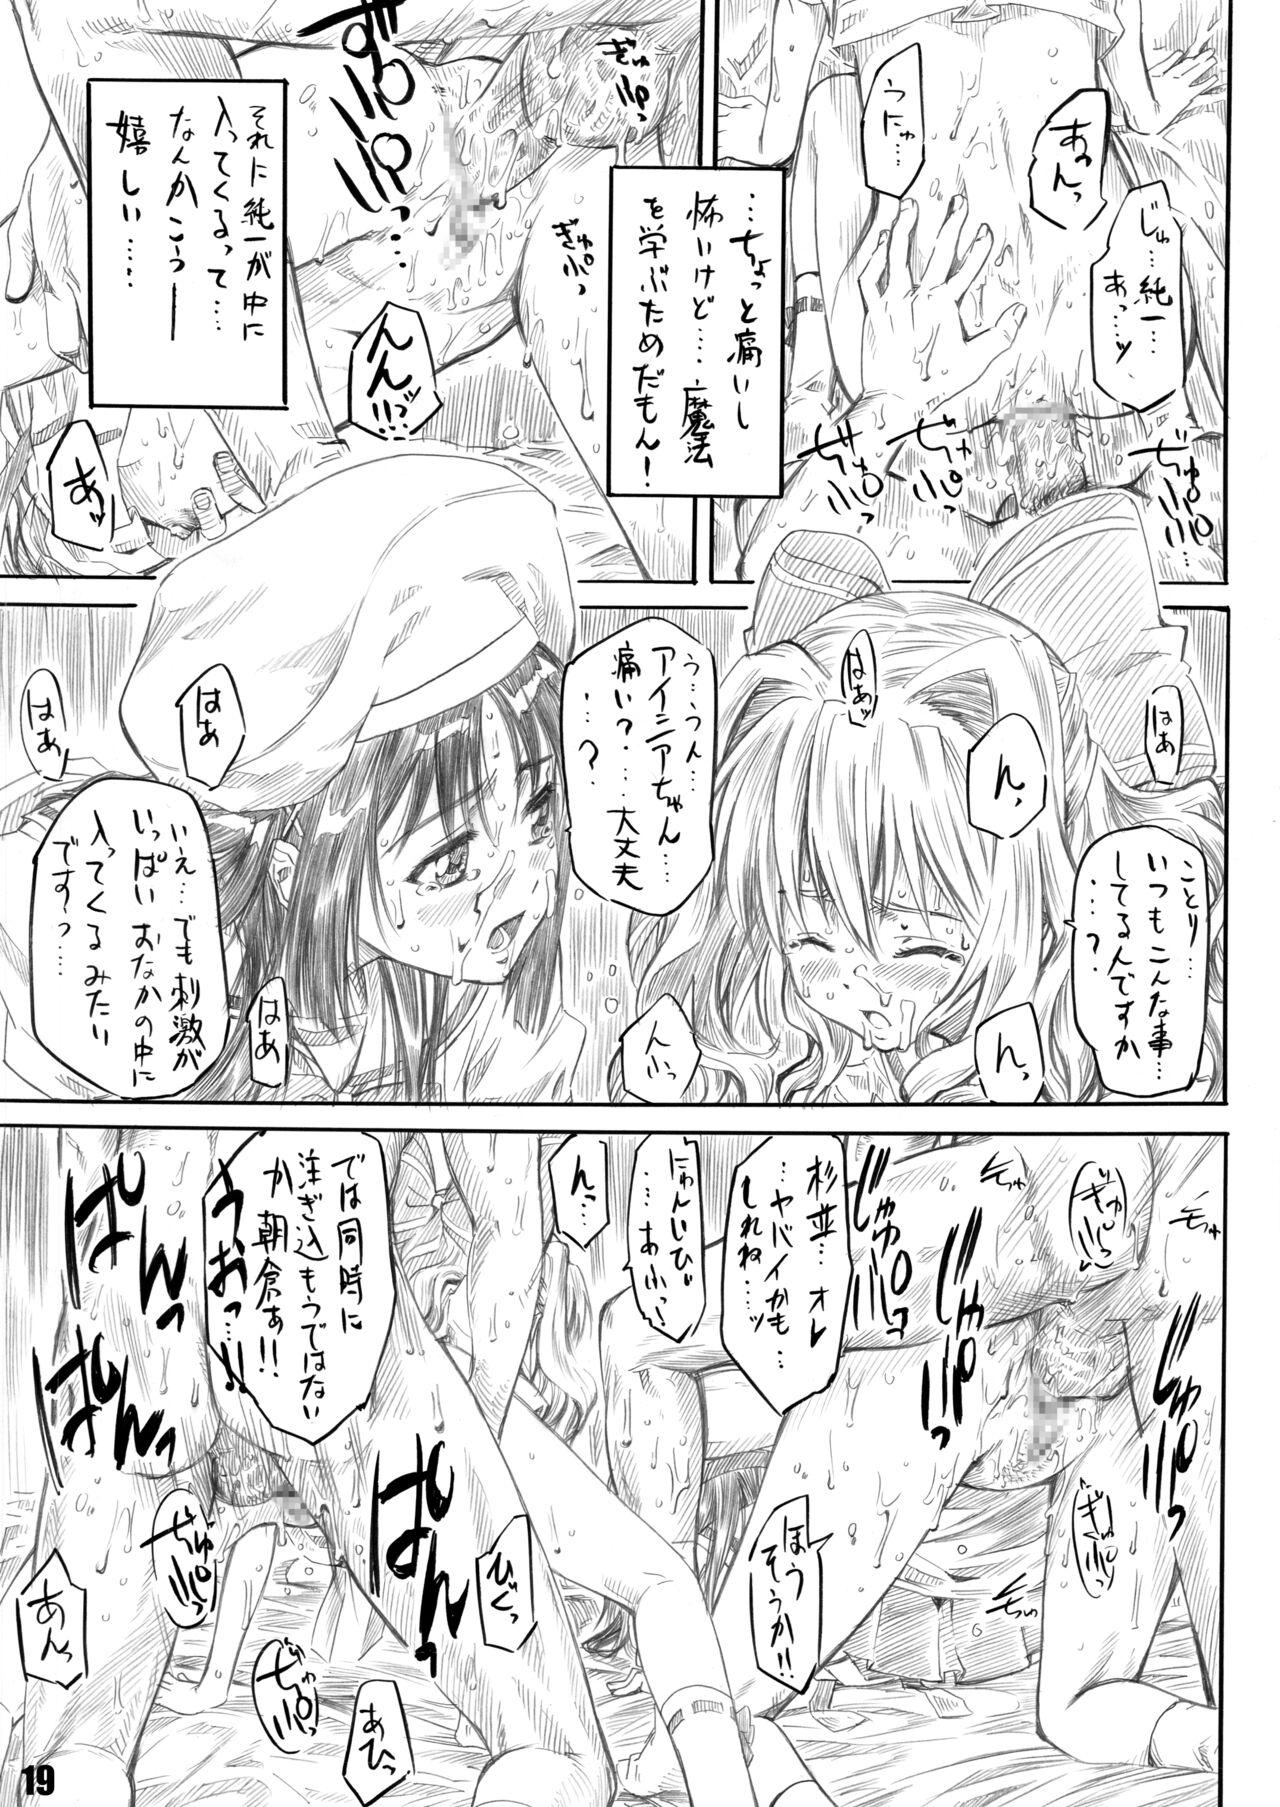 Weird Sakurairo no Kiretsu - Da capo Doggystyle - Page 11